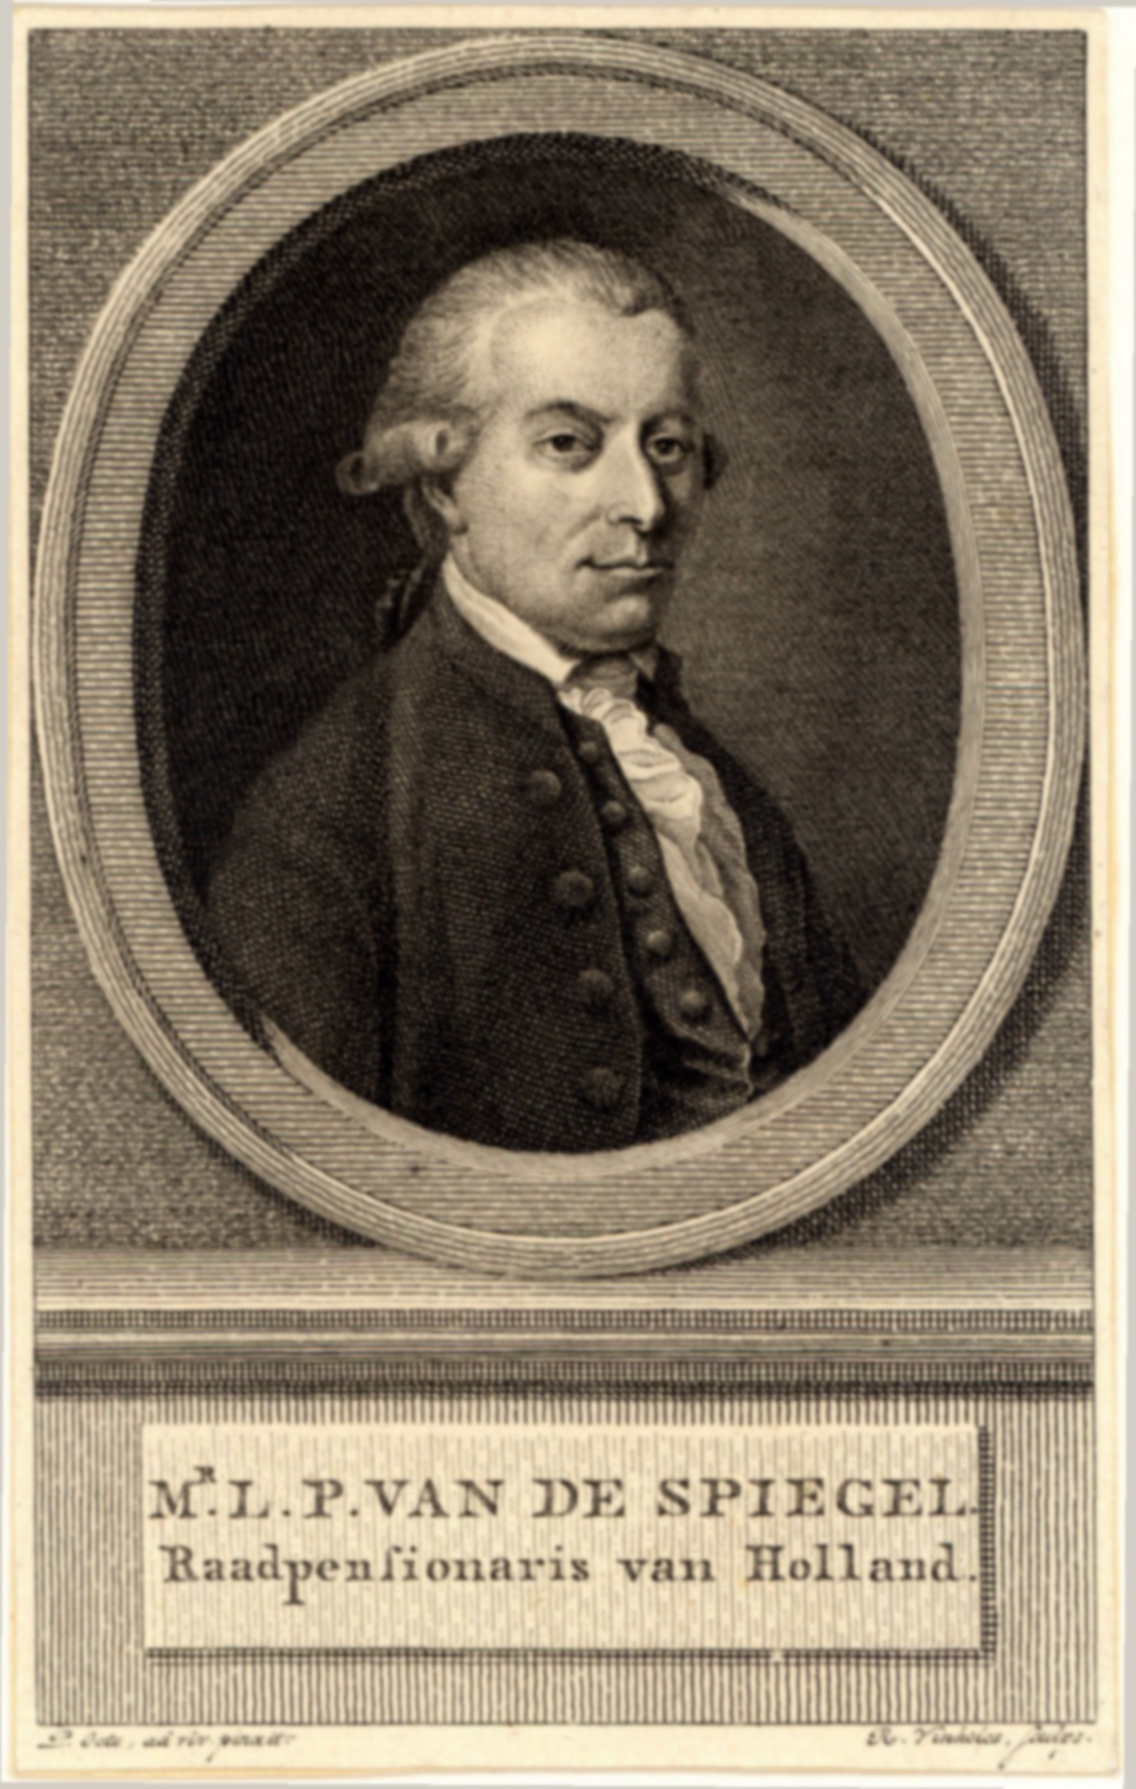 L.P. van de Spiegel, later Raadspensionaris van Holland vanaf 1787. 